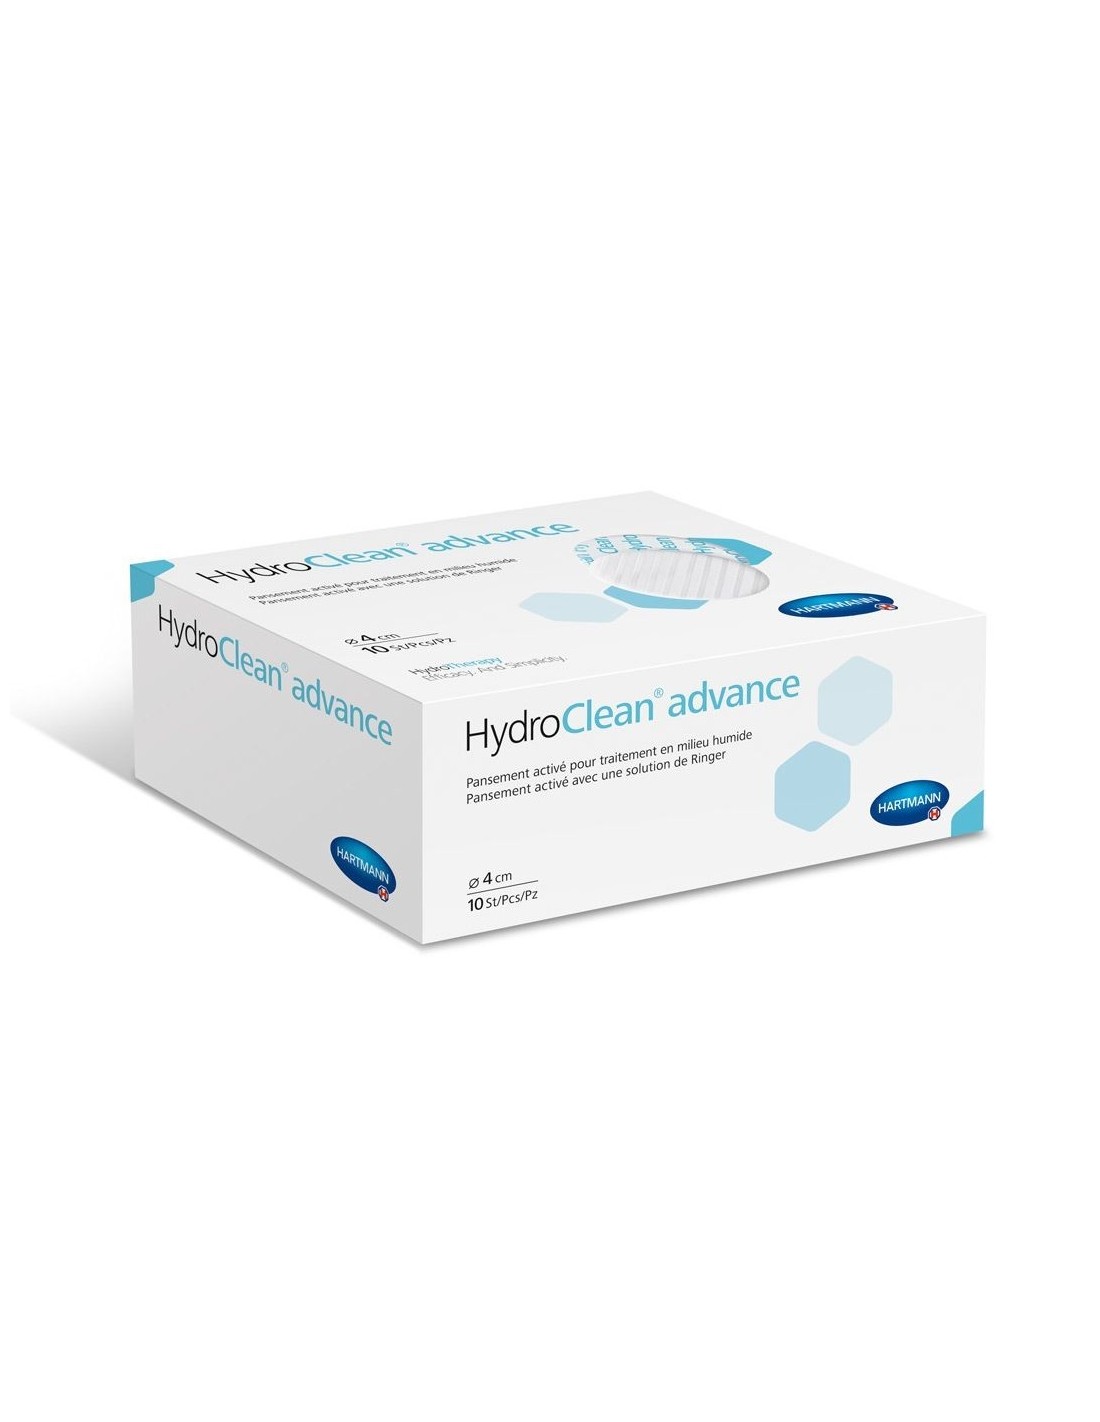 Îngrijire și tratare plăgi - Pansament hidro-reactiv Hydroclean Advance, 4 cm x 10 bucati, Hartmann, farmaciamare.ro